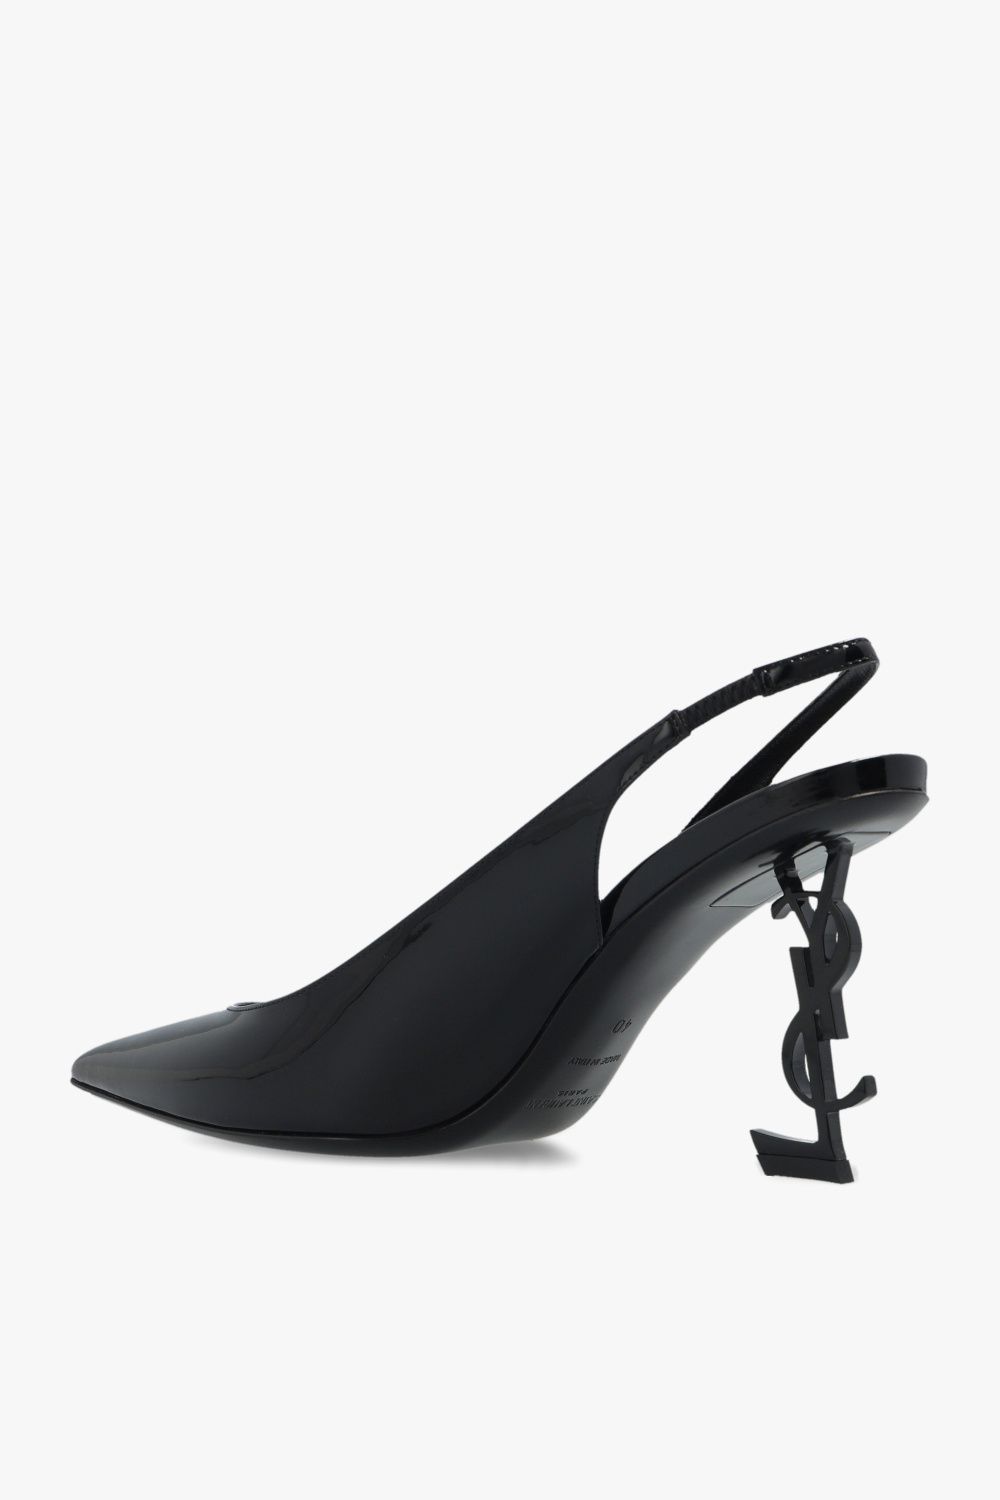 Saint Laurent ‘Opyum’ slingback pumps | Women's Shoes | Vitkac